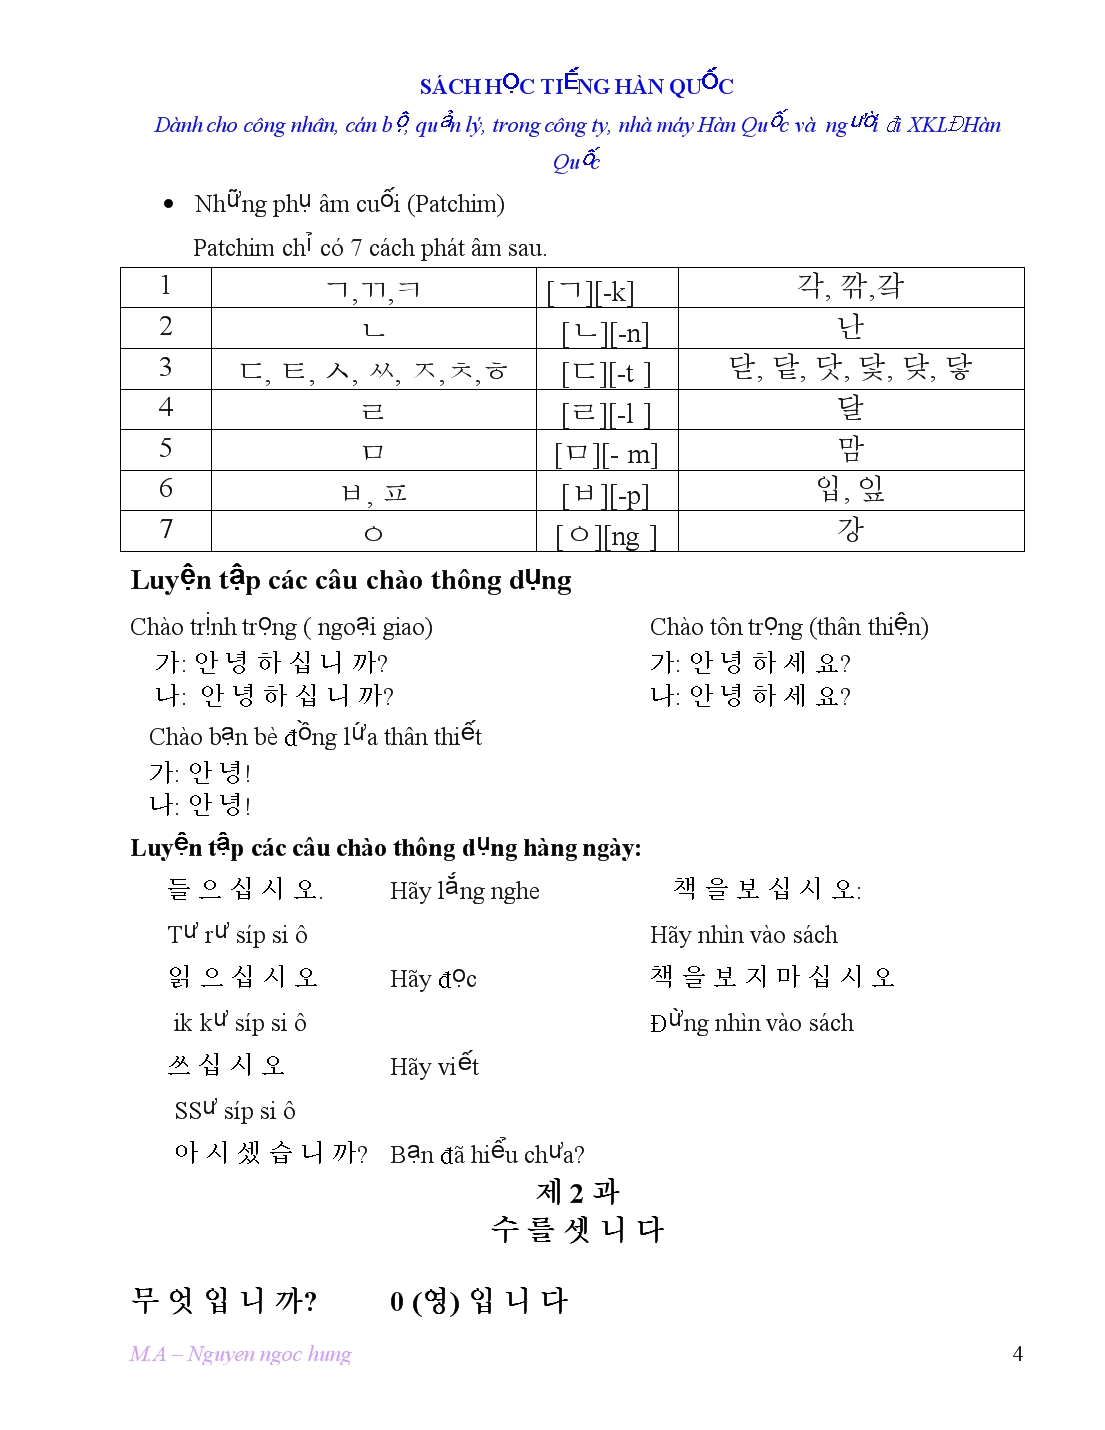 Chữ cái Hàn Quốc trang 4